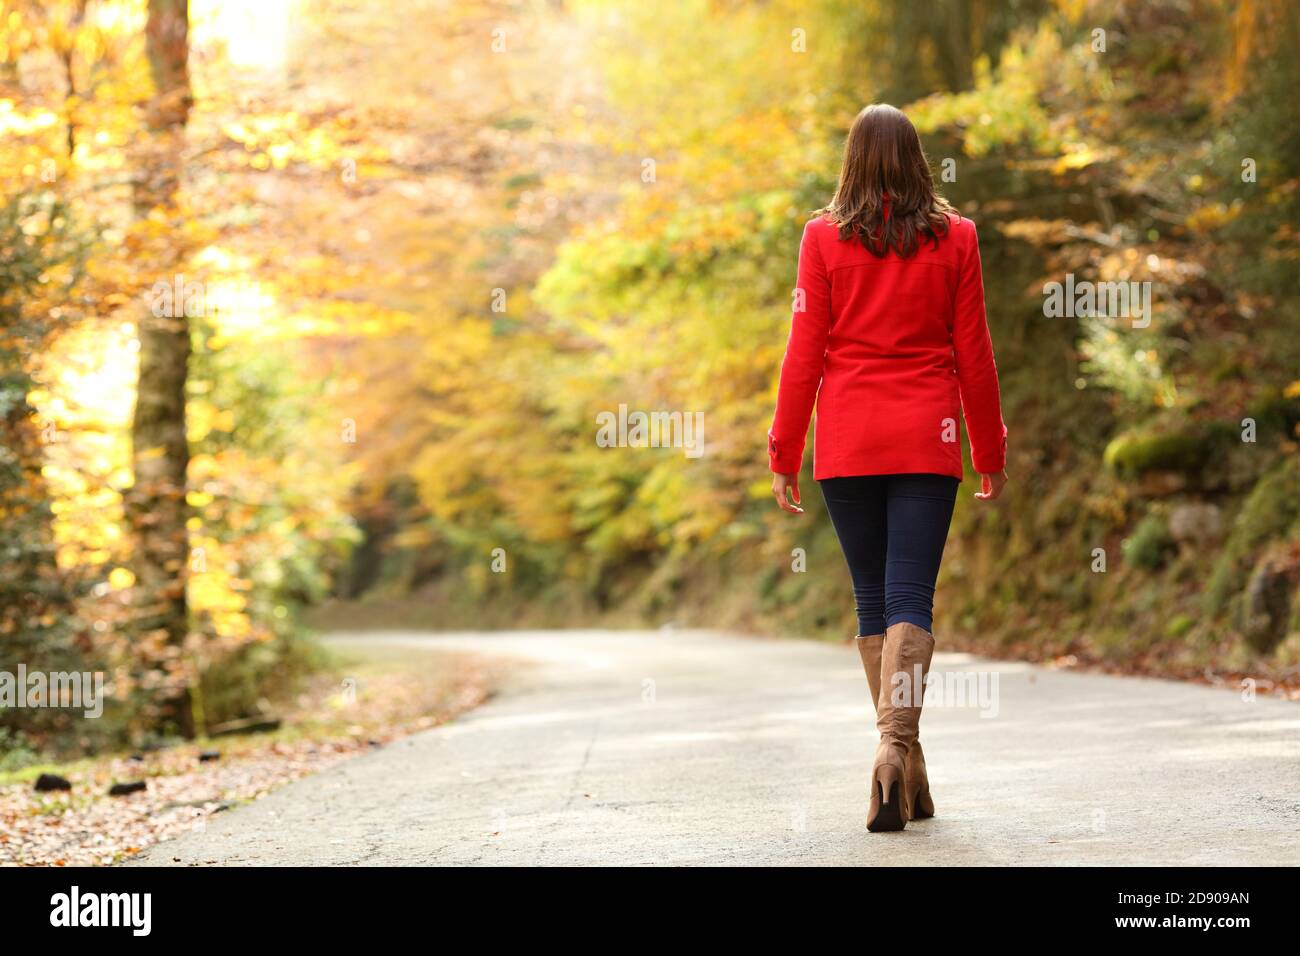 Indietro ritratto di una donna di moda in rosso camminando in autunno in una strada forestale o parco Foto Stock